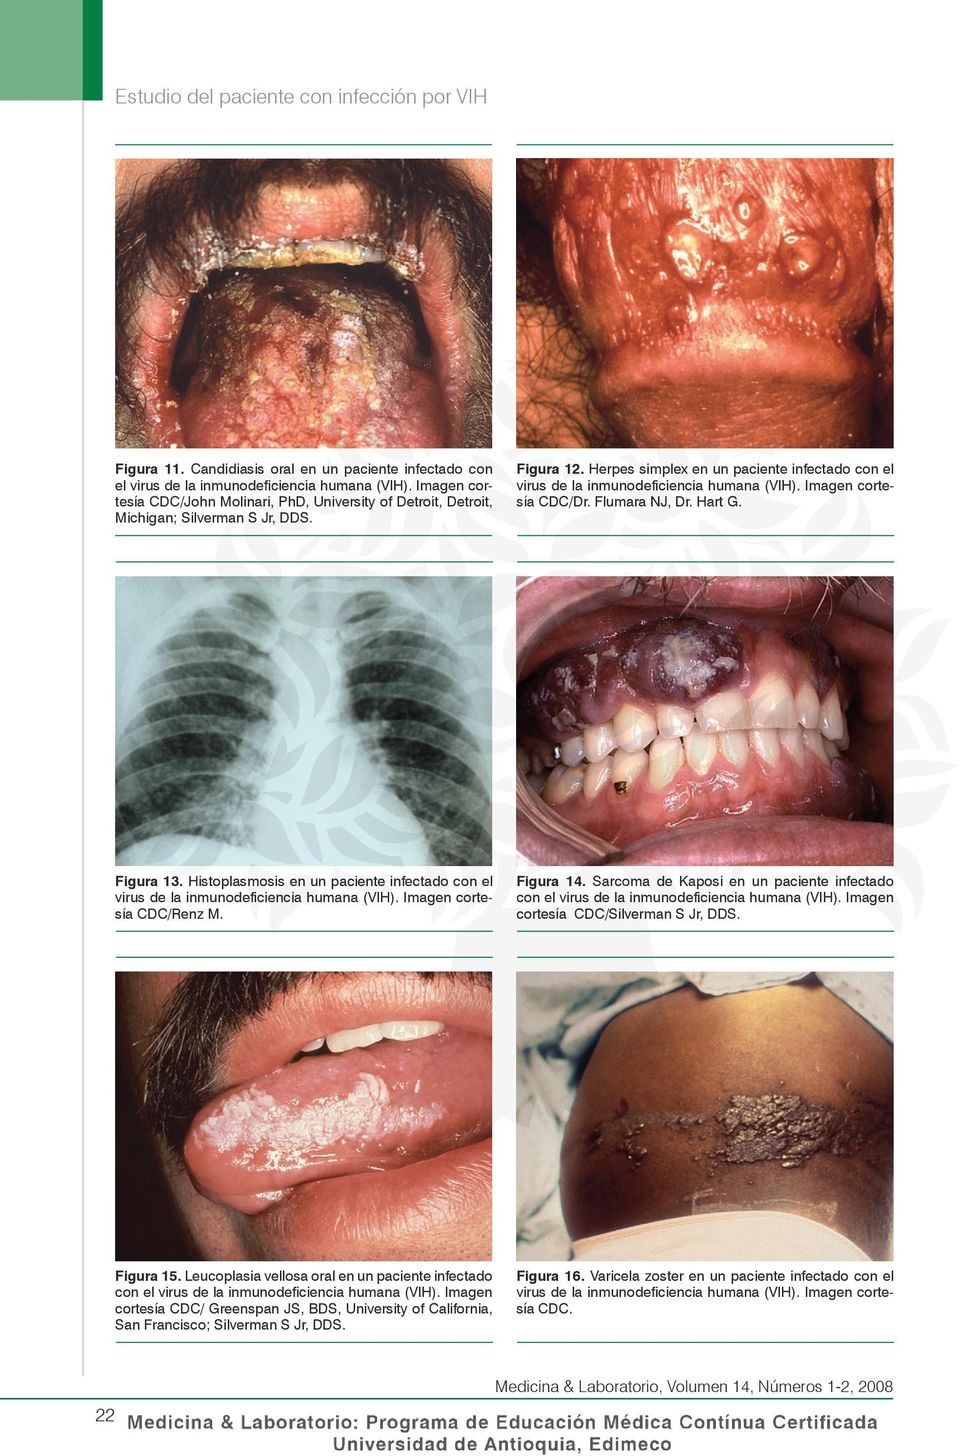 Herpes simplex en un paciente infectado con el virus de la inmunodeficiencia humana (VIH). Imagen cortesía CDC/Dr. Flumara NJ, Dr. Hart G. Figura 13.